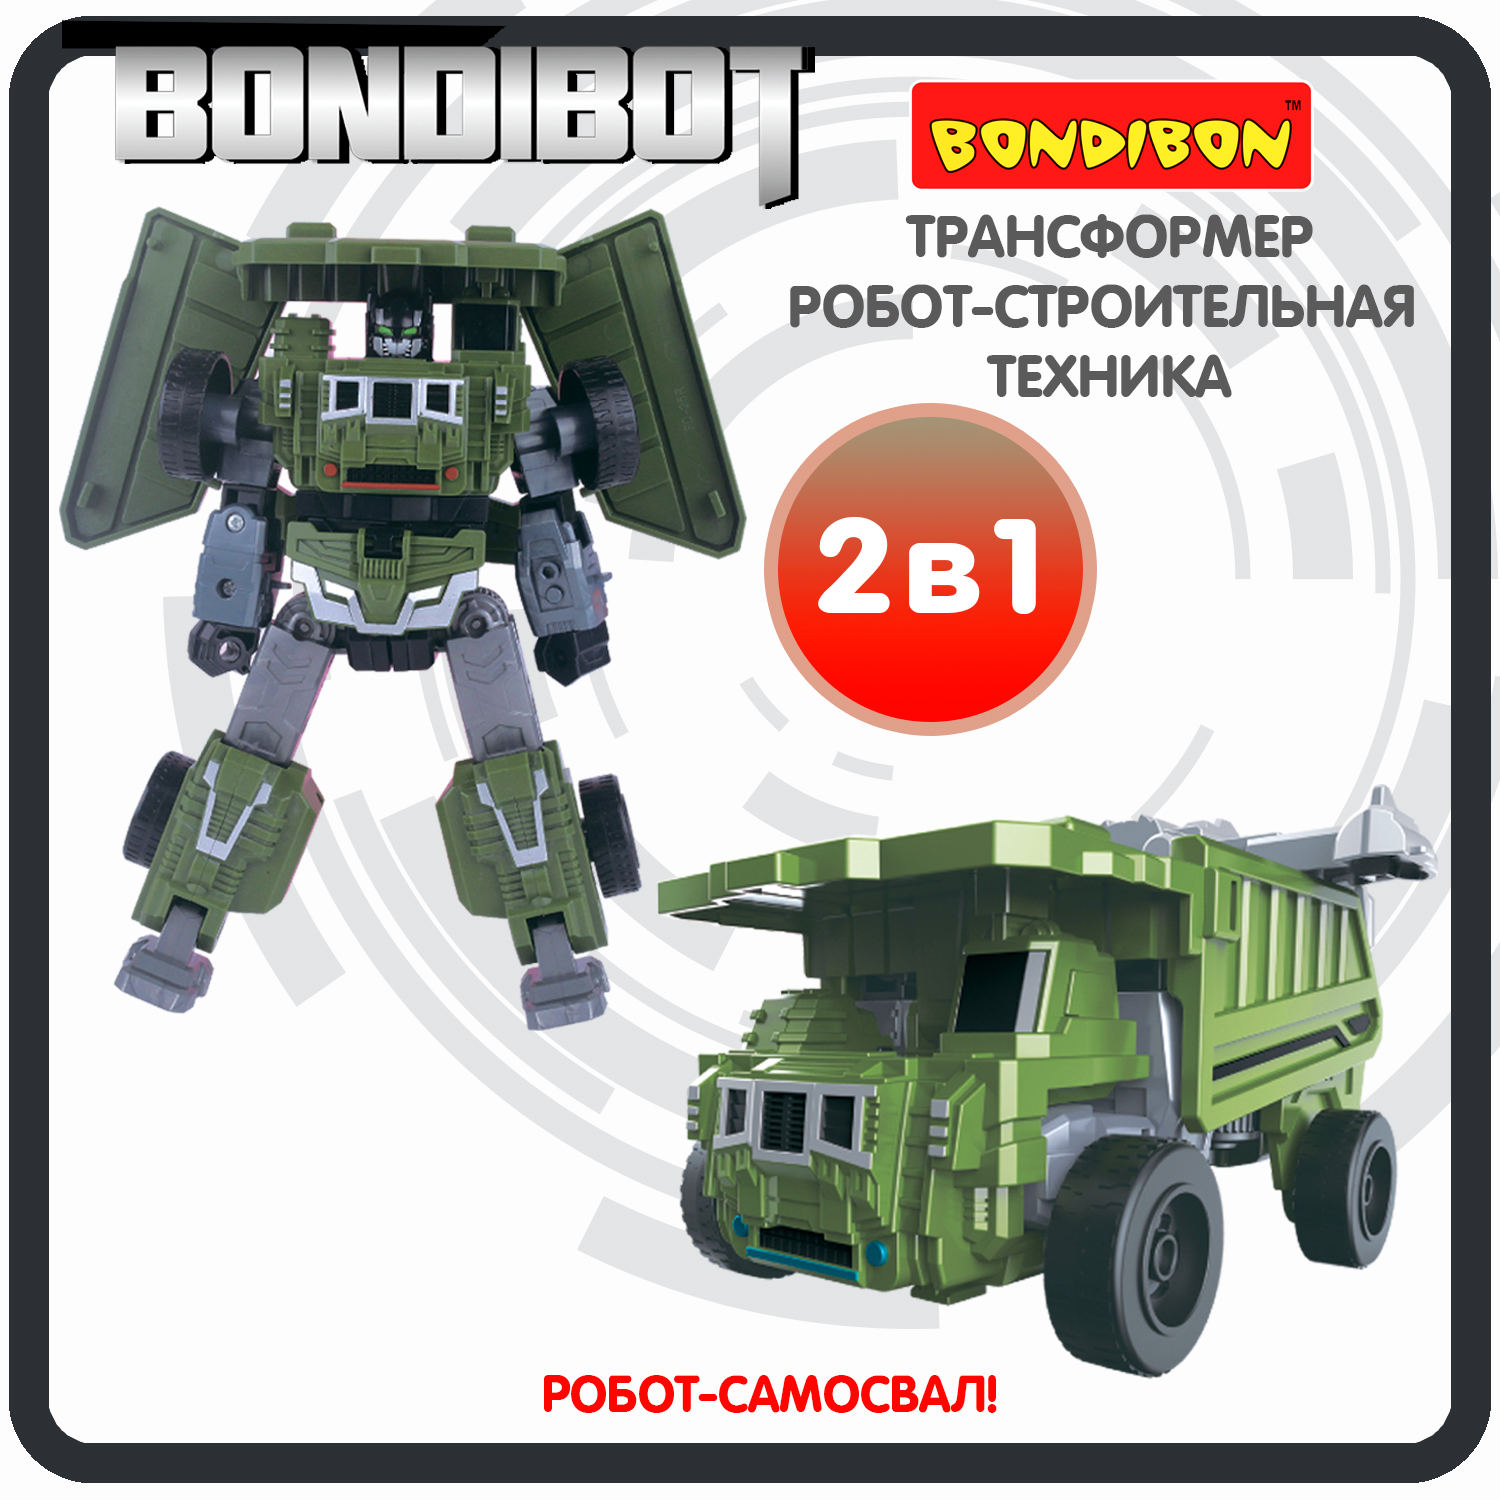 Трансформер робот-строительная техника, 2в1 BONDIBOT Bondibon, самосвал / ВВ6052 bondibon трансформер bondibot робот самосвал 2 в 1